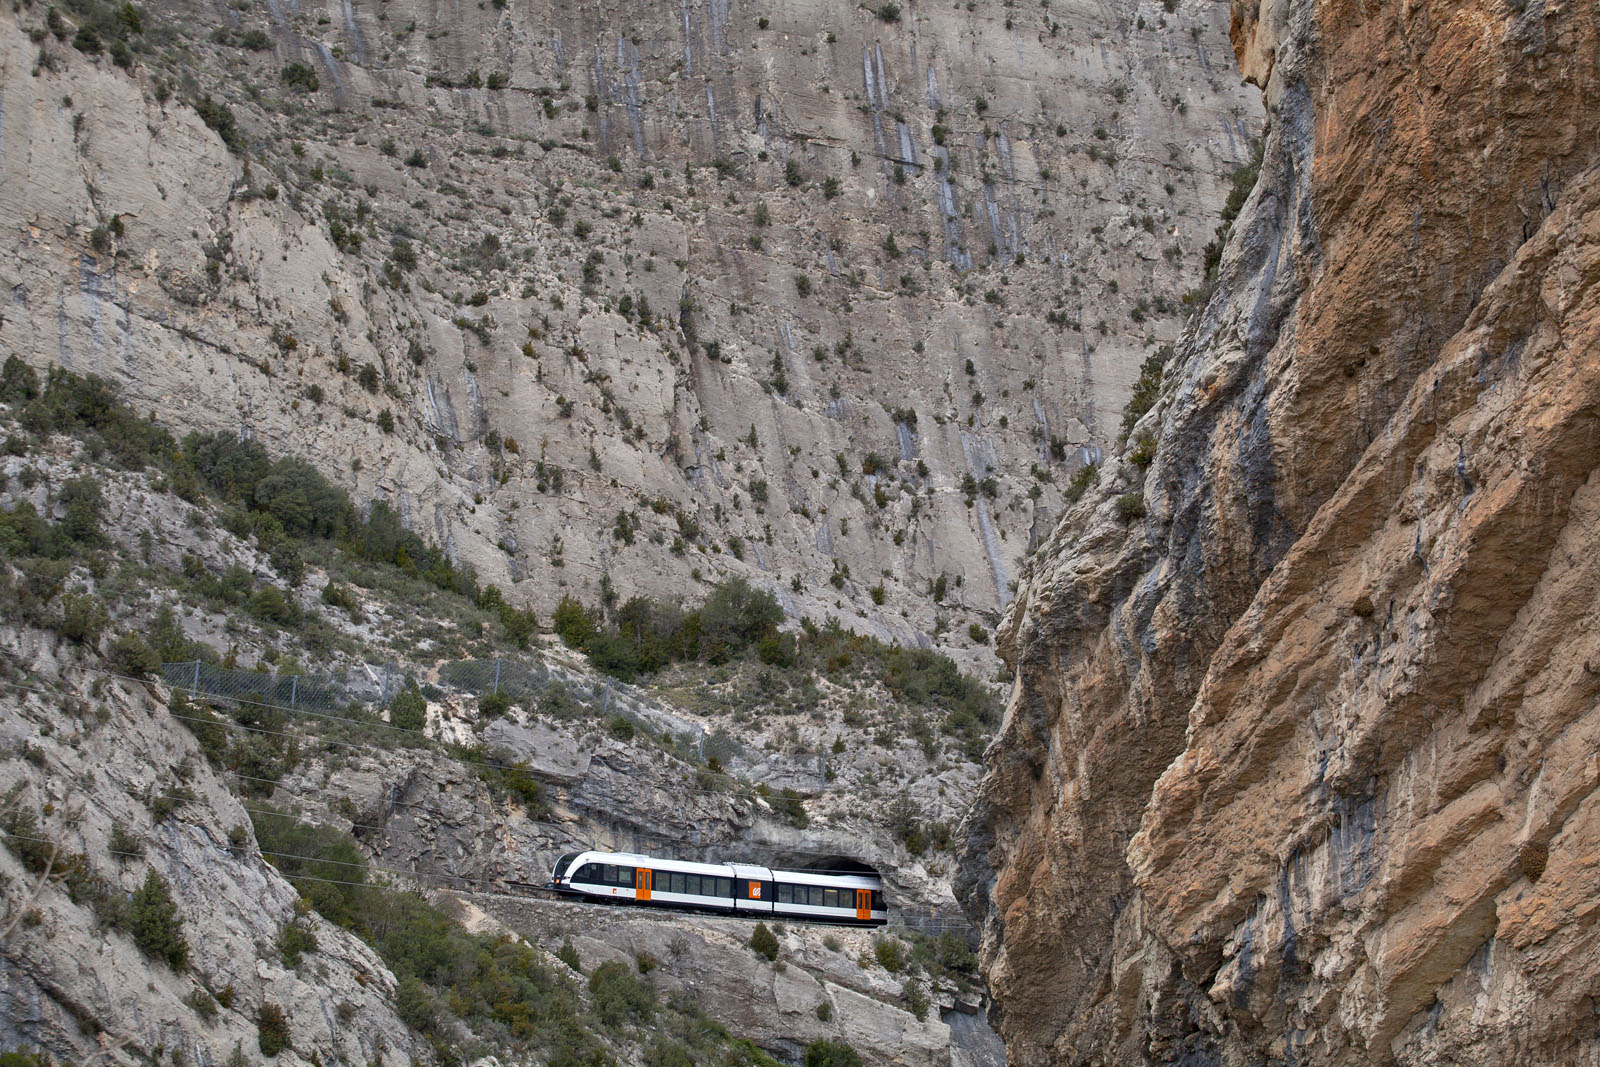 Vista del tren panoràmic al Prepirineu de Lleida / Vista del tren panorámico en el prepirineo de Lleida